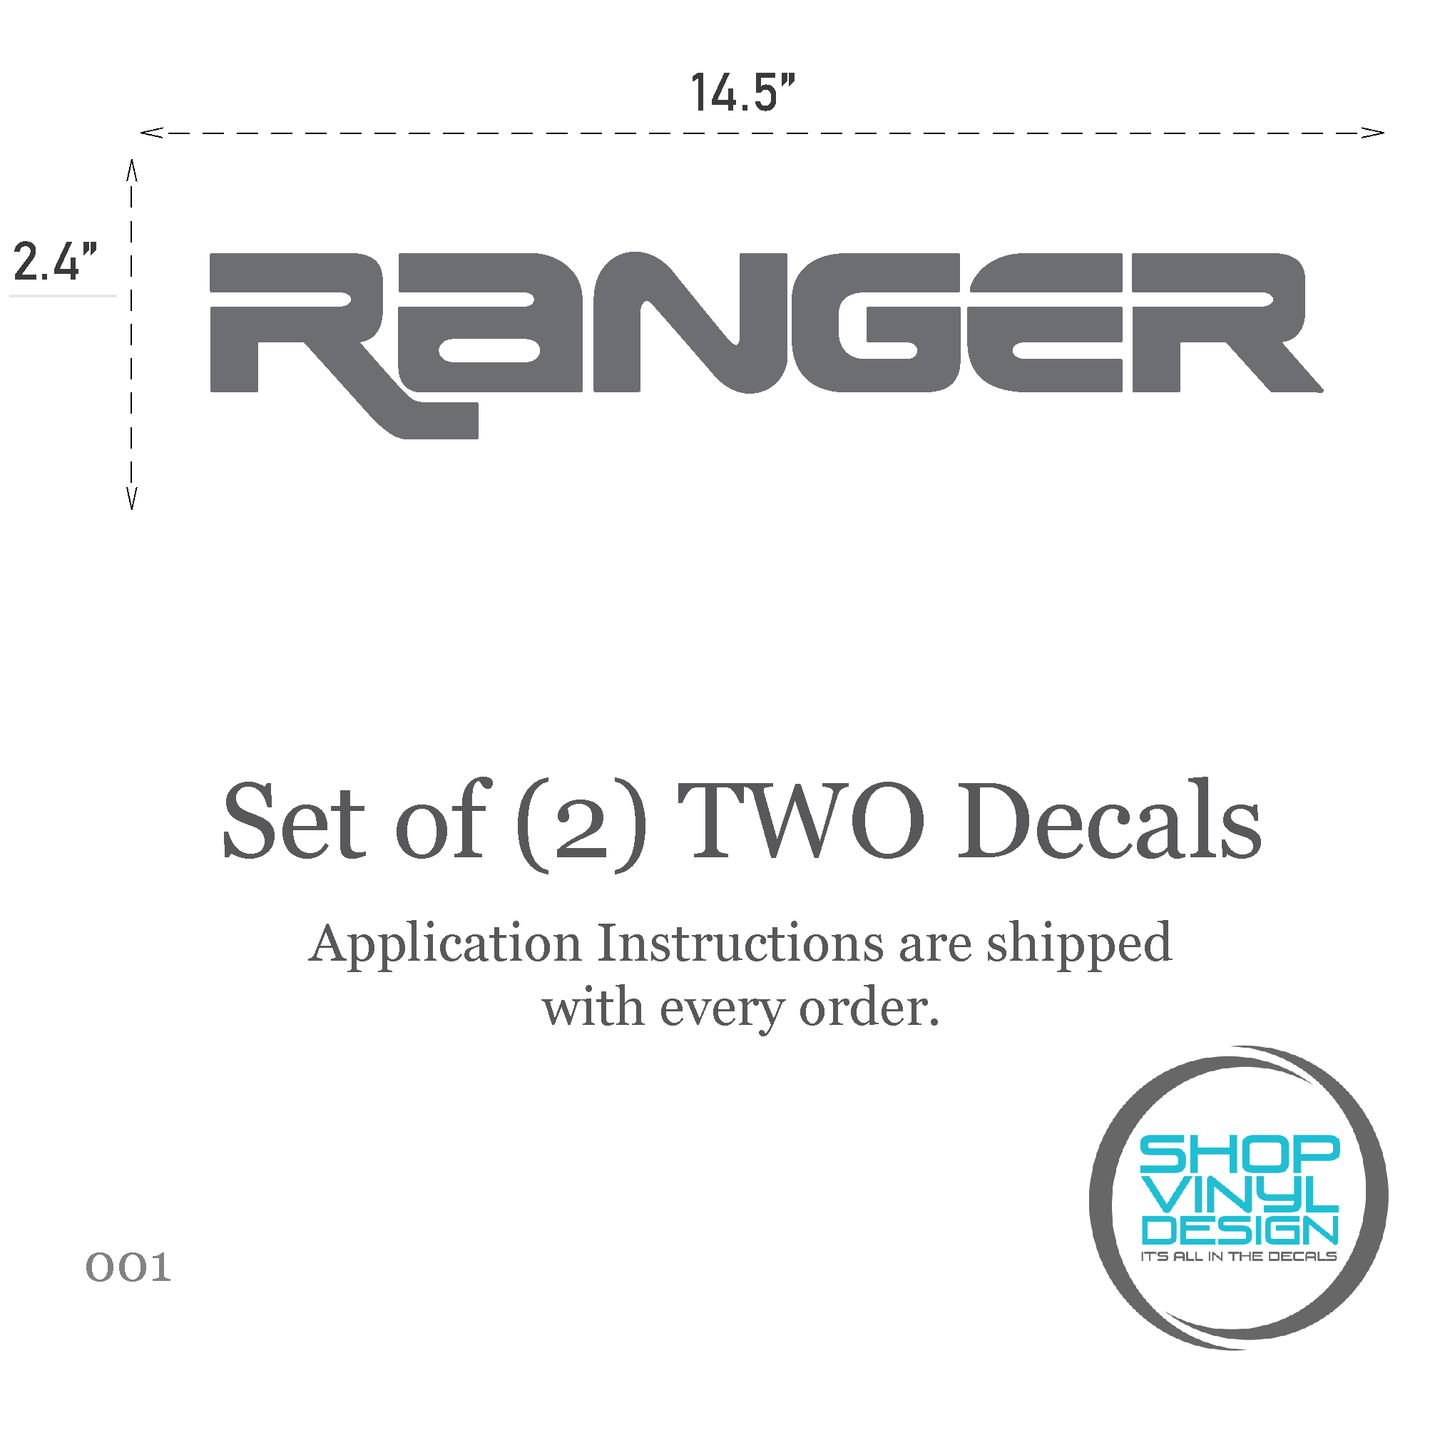 Shop Vinyl Design Ranger Trucks Replacement Bedside Decals #001 Vehicle Vinyl Graphic Decal Shop Vinyl Design decals stickers